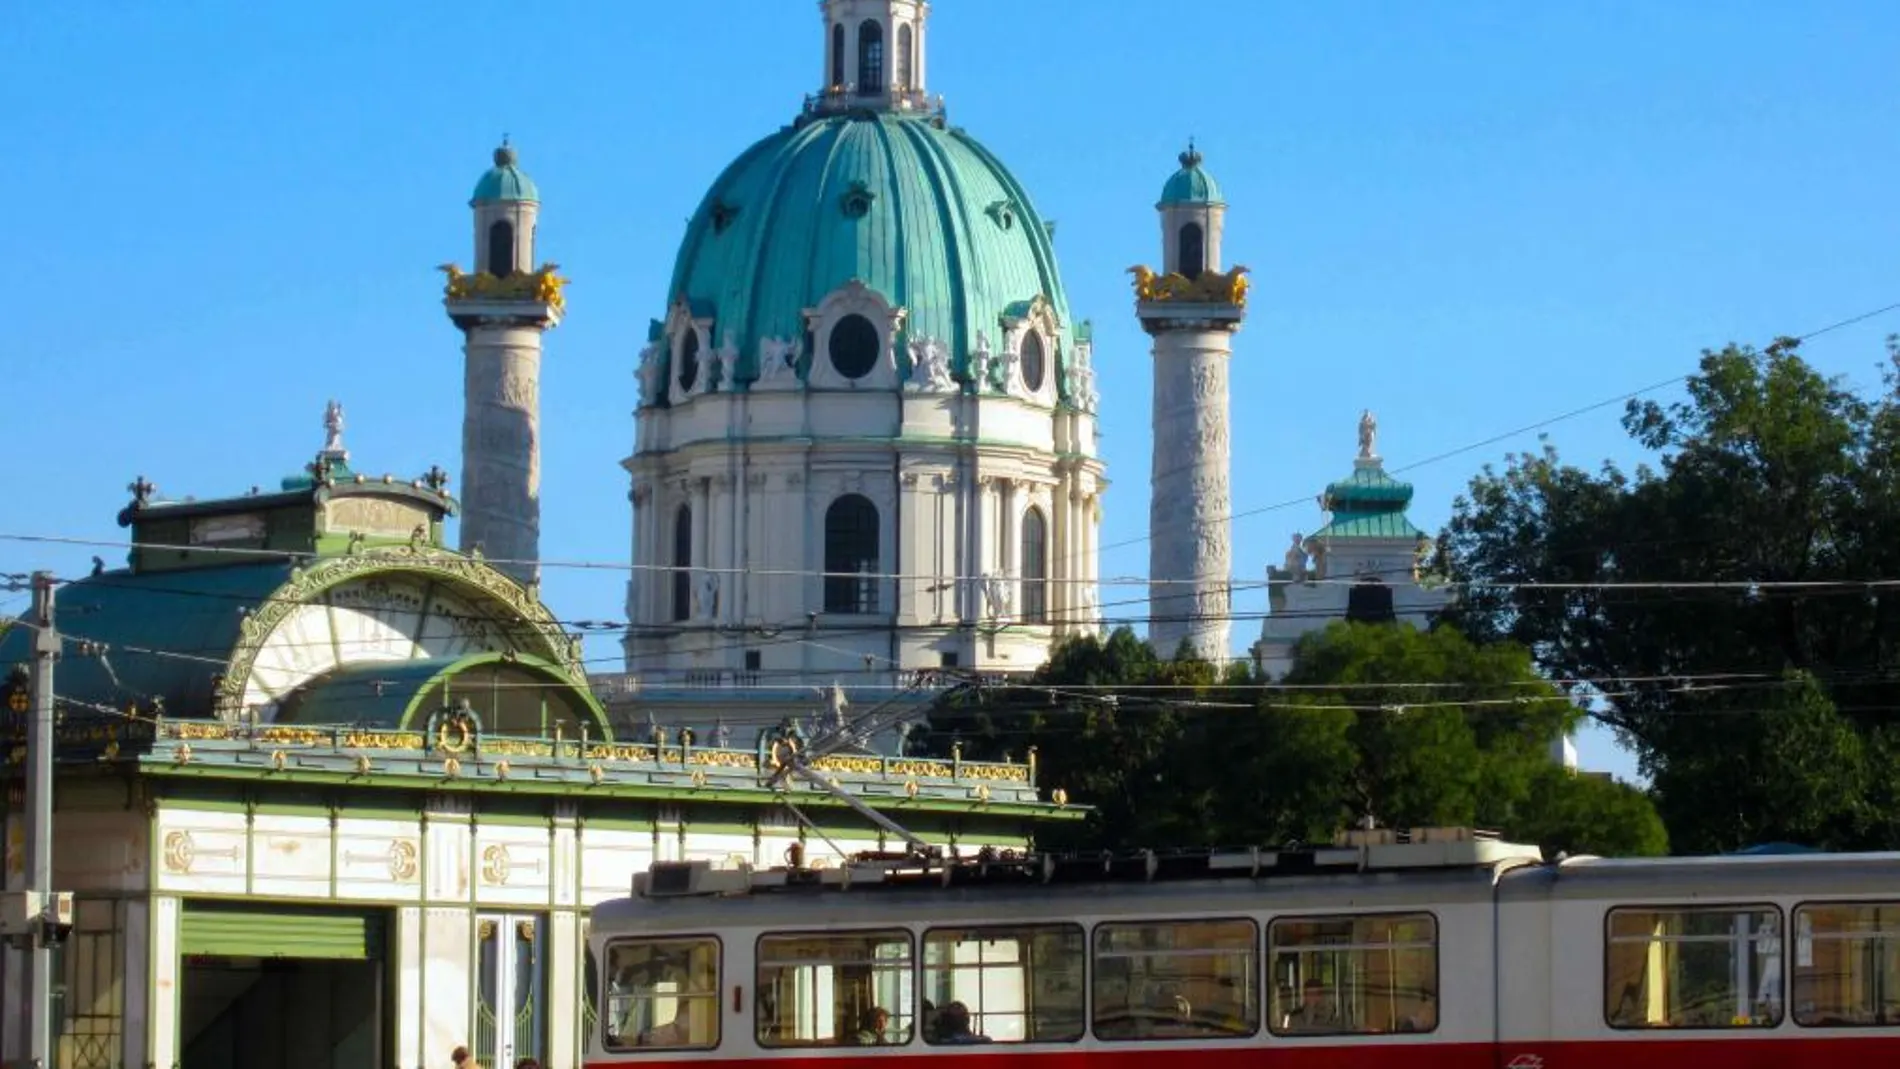 Viena: arte, cultura y música